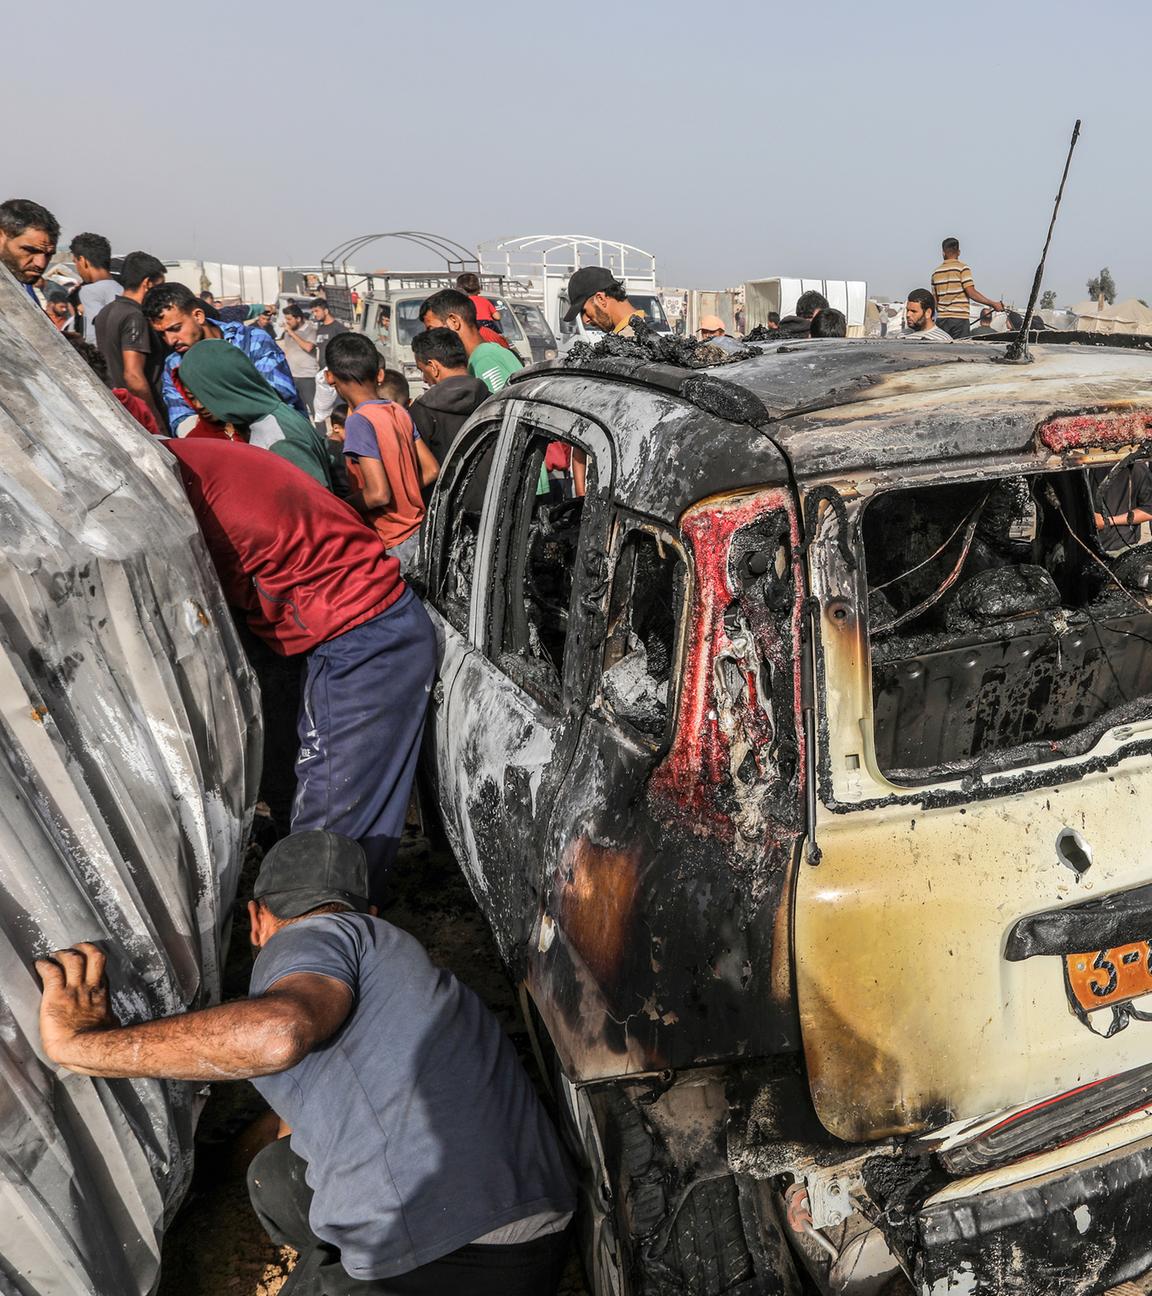 Palästinensische Gebiete, Rafah: Palästinenser inspizieren ein ausgebranntes Auto nach einem israelischen Luftangriff auf ein Flüchtlingslager.